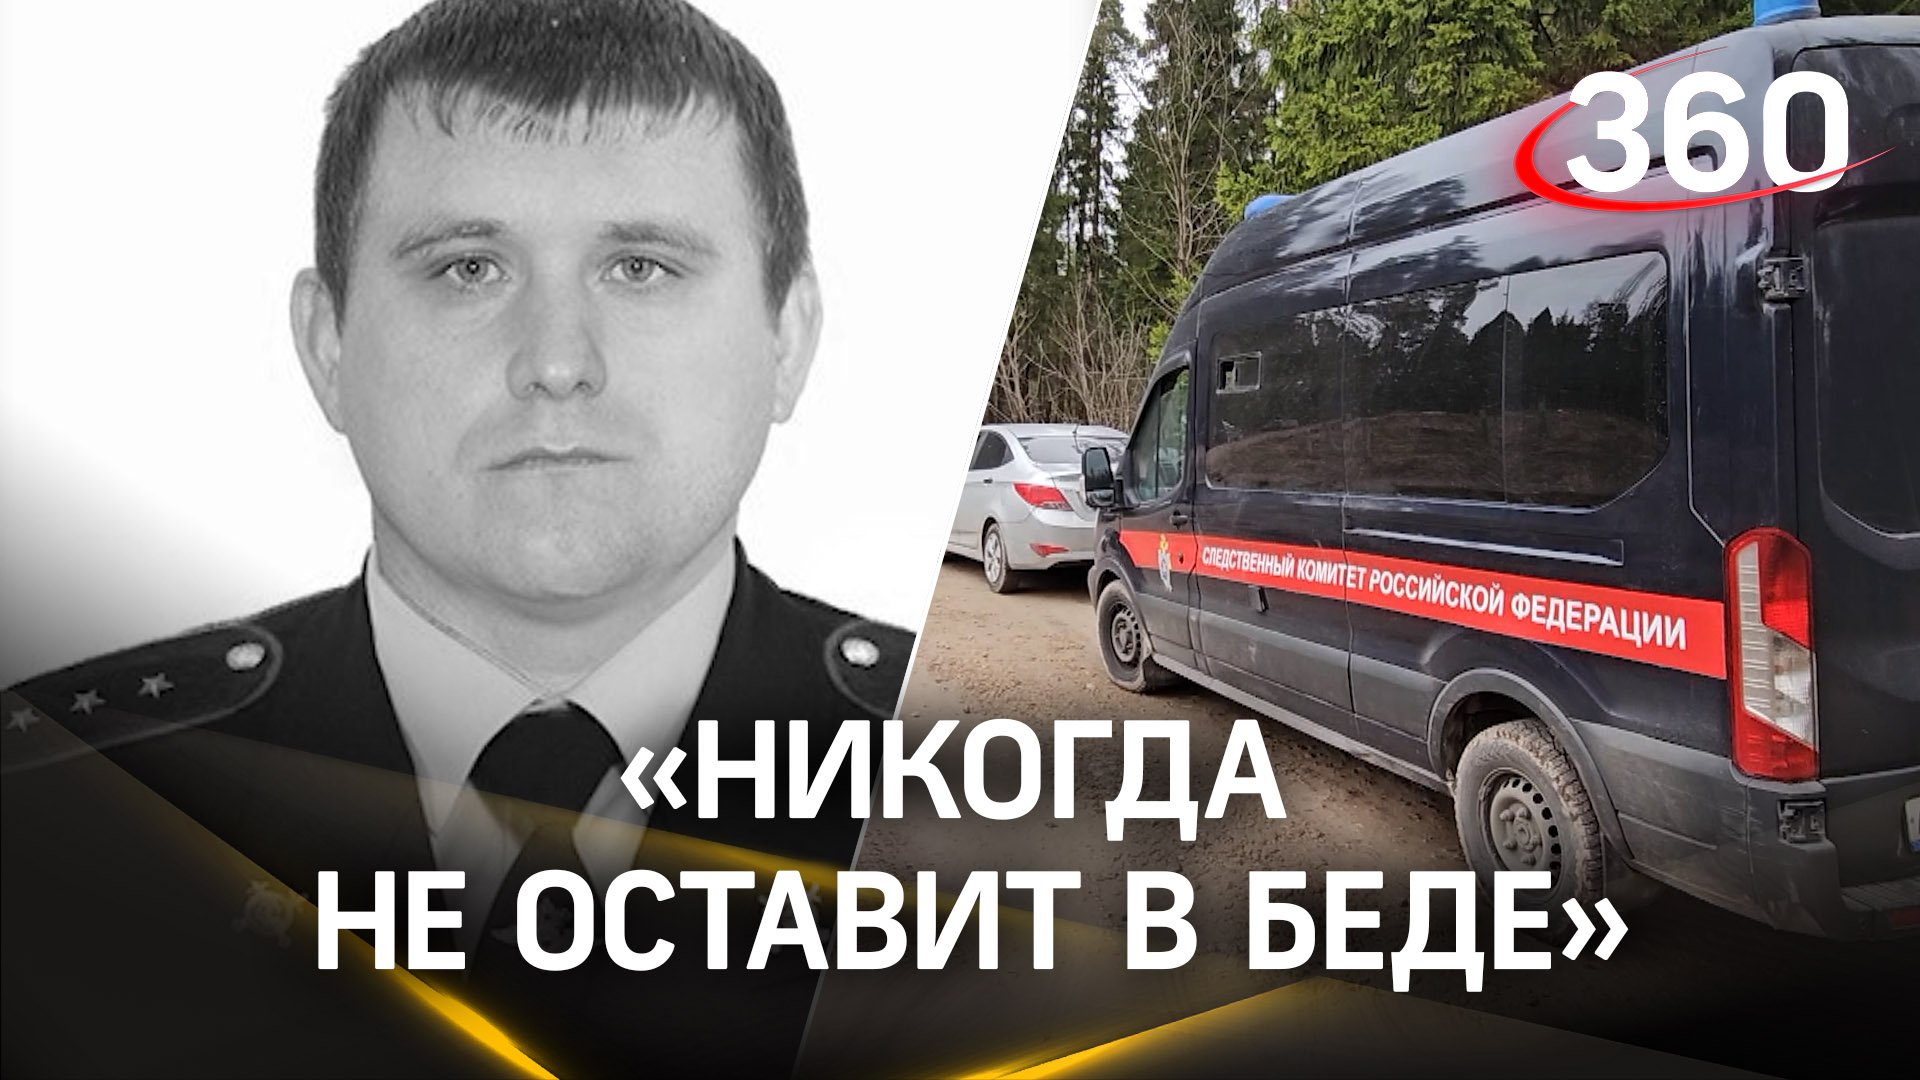 «Должен был уйти на пенсию после СВО»: что известно о погибшем в перестрелке полицейском из Щёлкова